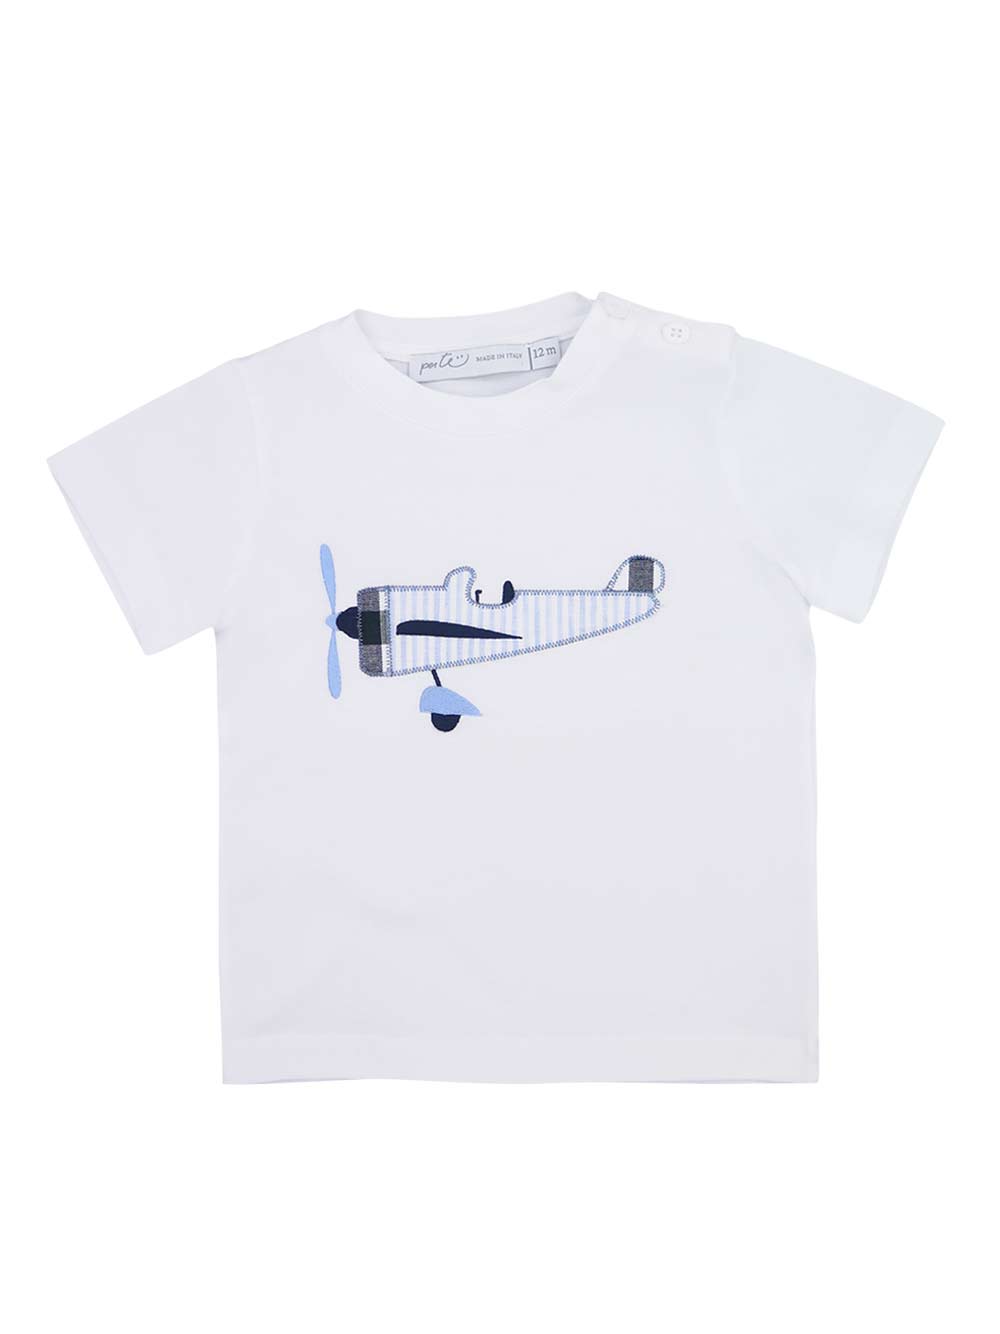 Blue Aircraft T-Shirt